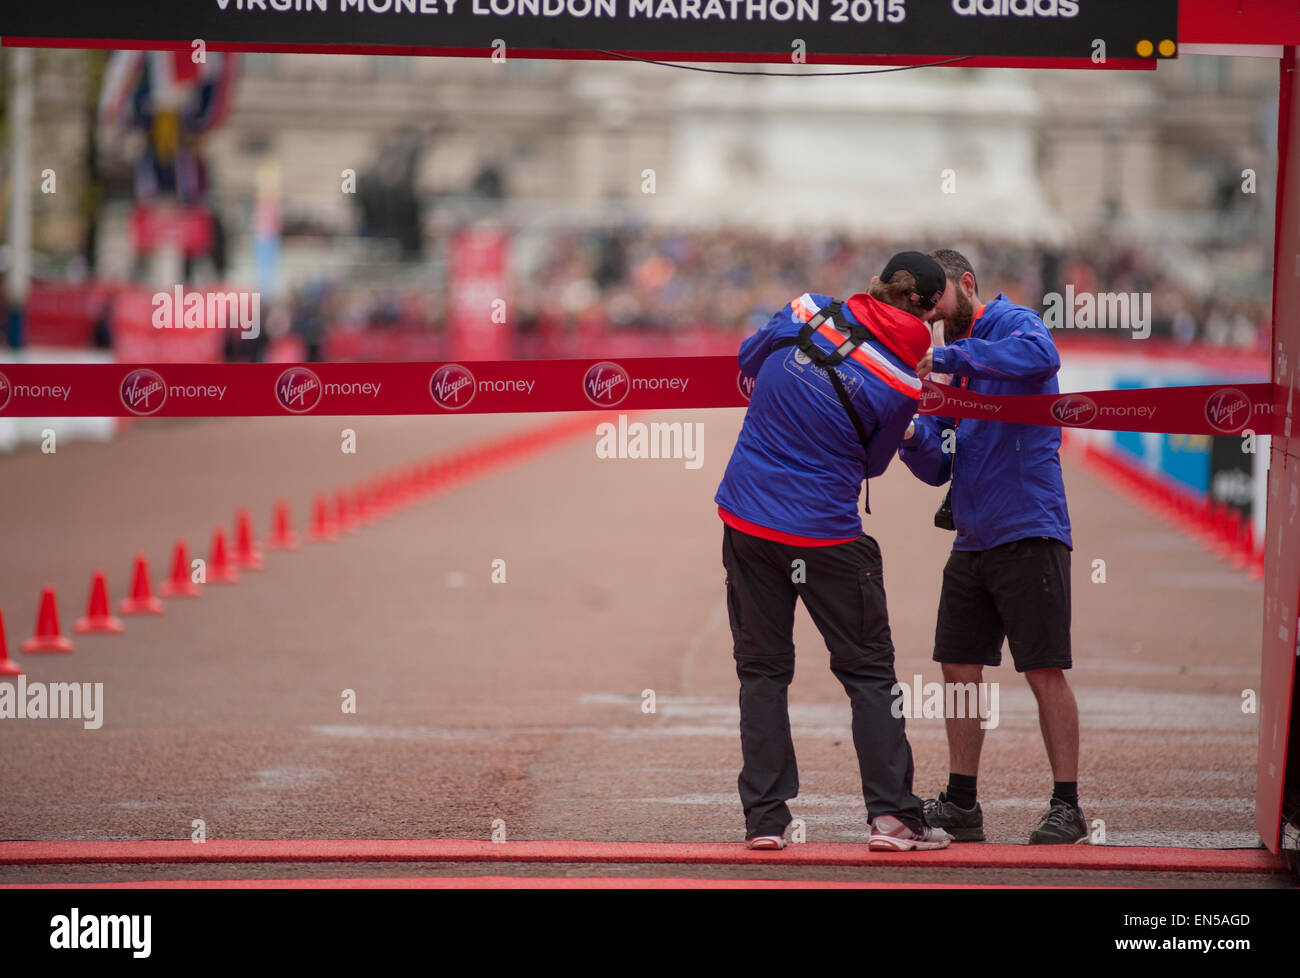 Beamten schließen das Zielband für das Finish der Jungfrau Geld 2015 London Marathon Elite Rennen der Männer. Stockfoto